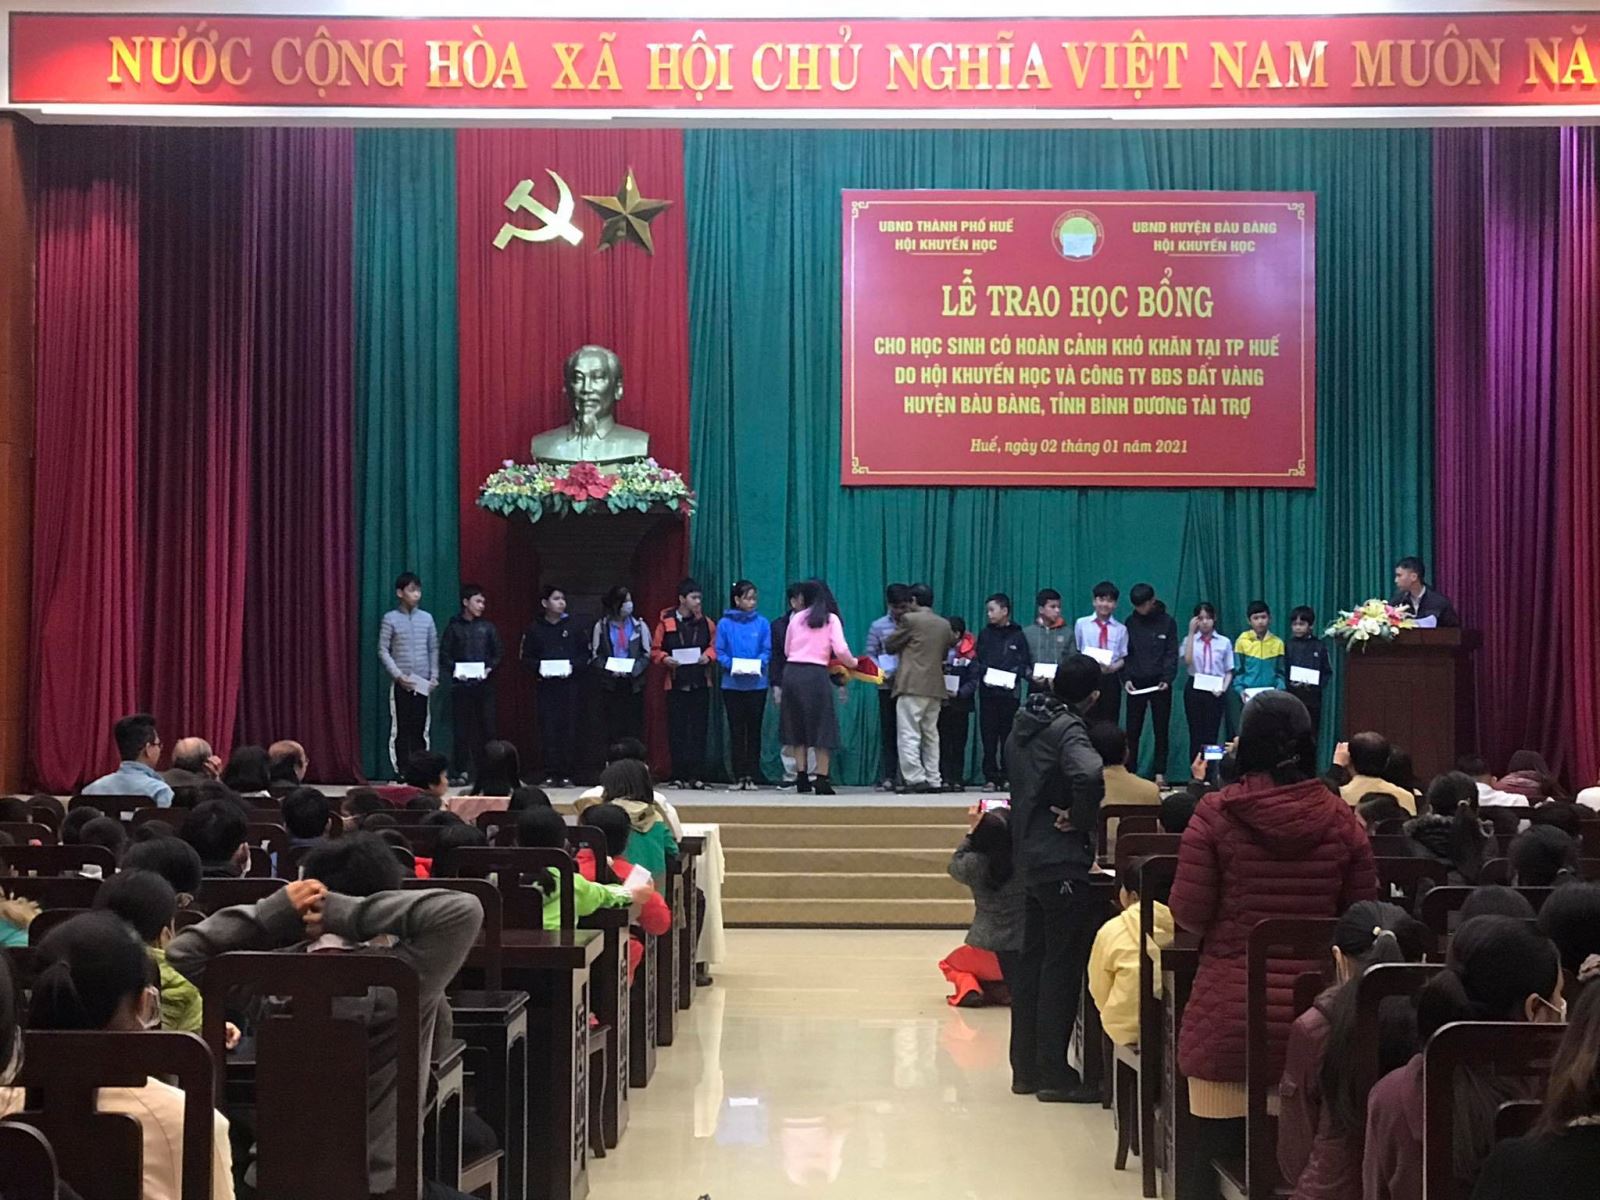 Em Phạm Thị Thanh Ngân nhận học bổng cho học sinh có hoàn cảnh khó khăn học giỏi ở thành phố Huế